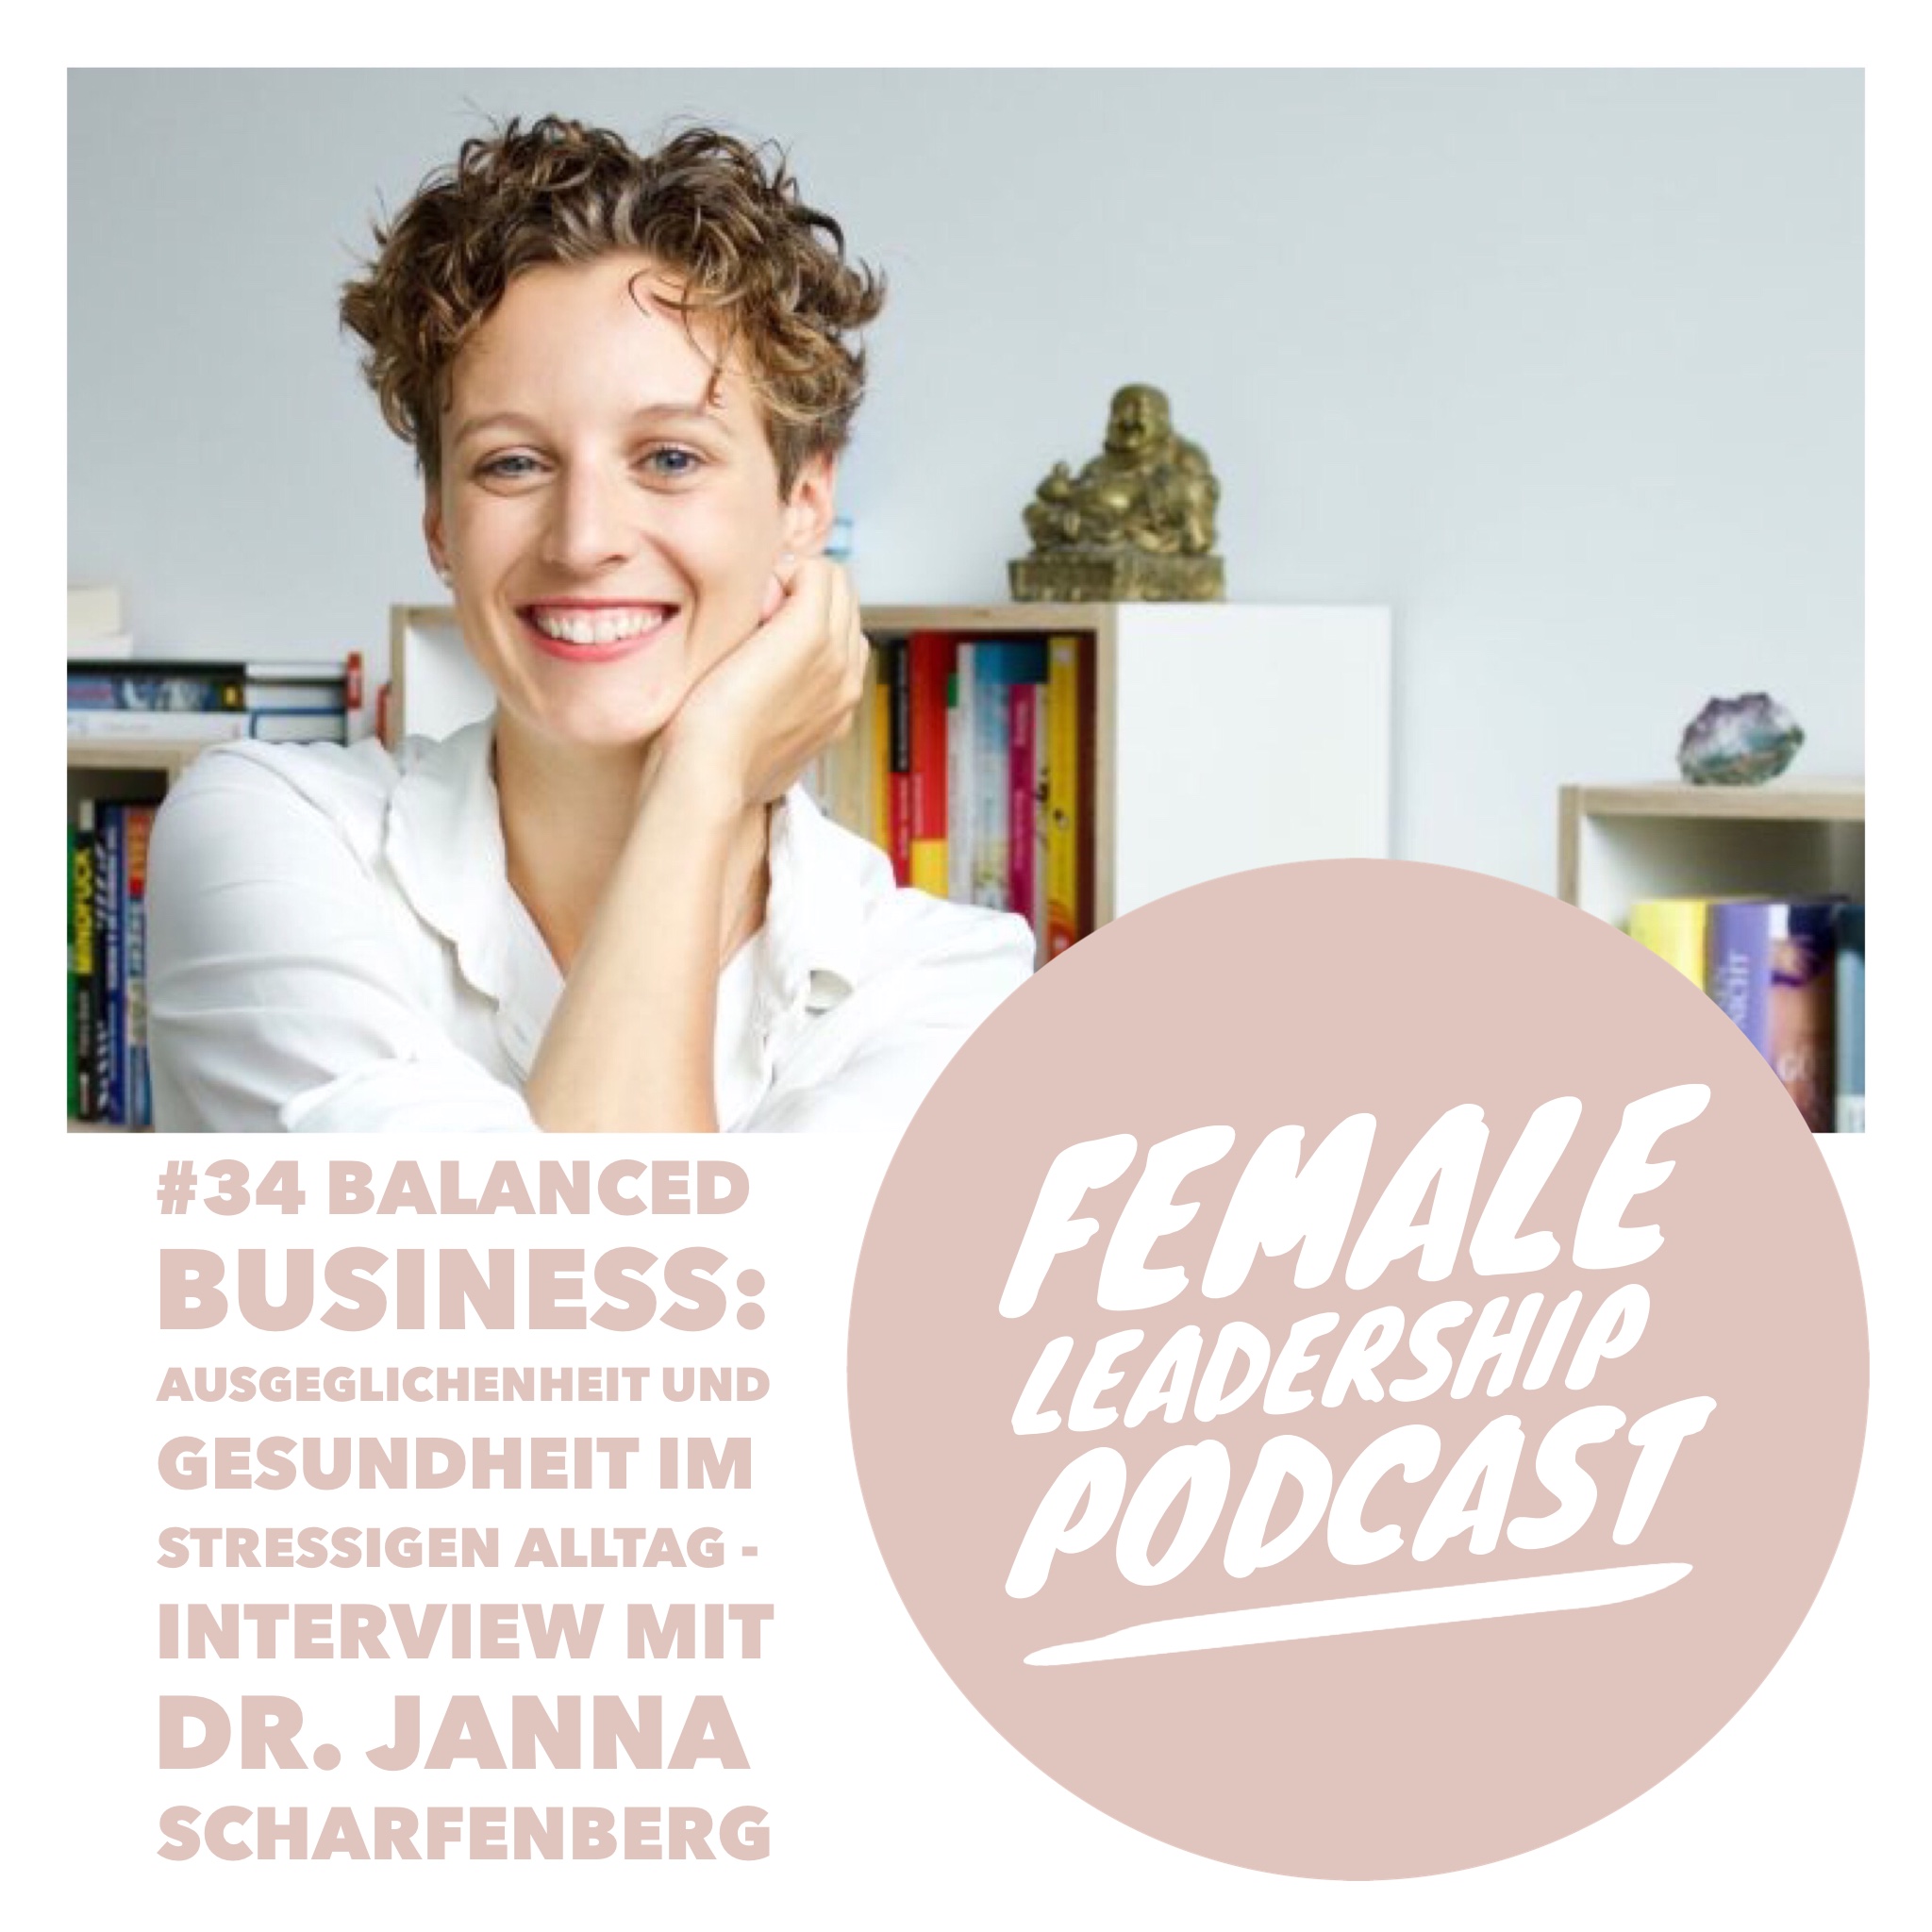 #34 Balanced Business: Ausgeglichenheit und Gesundheit im stressigen Alltag - Interview mit Dr. med. Janna Scharfenberg